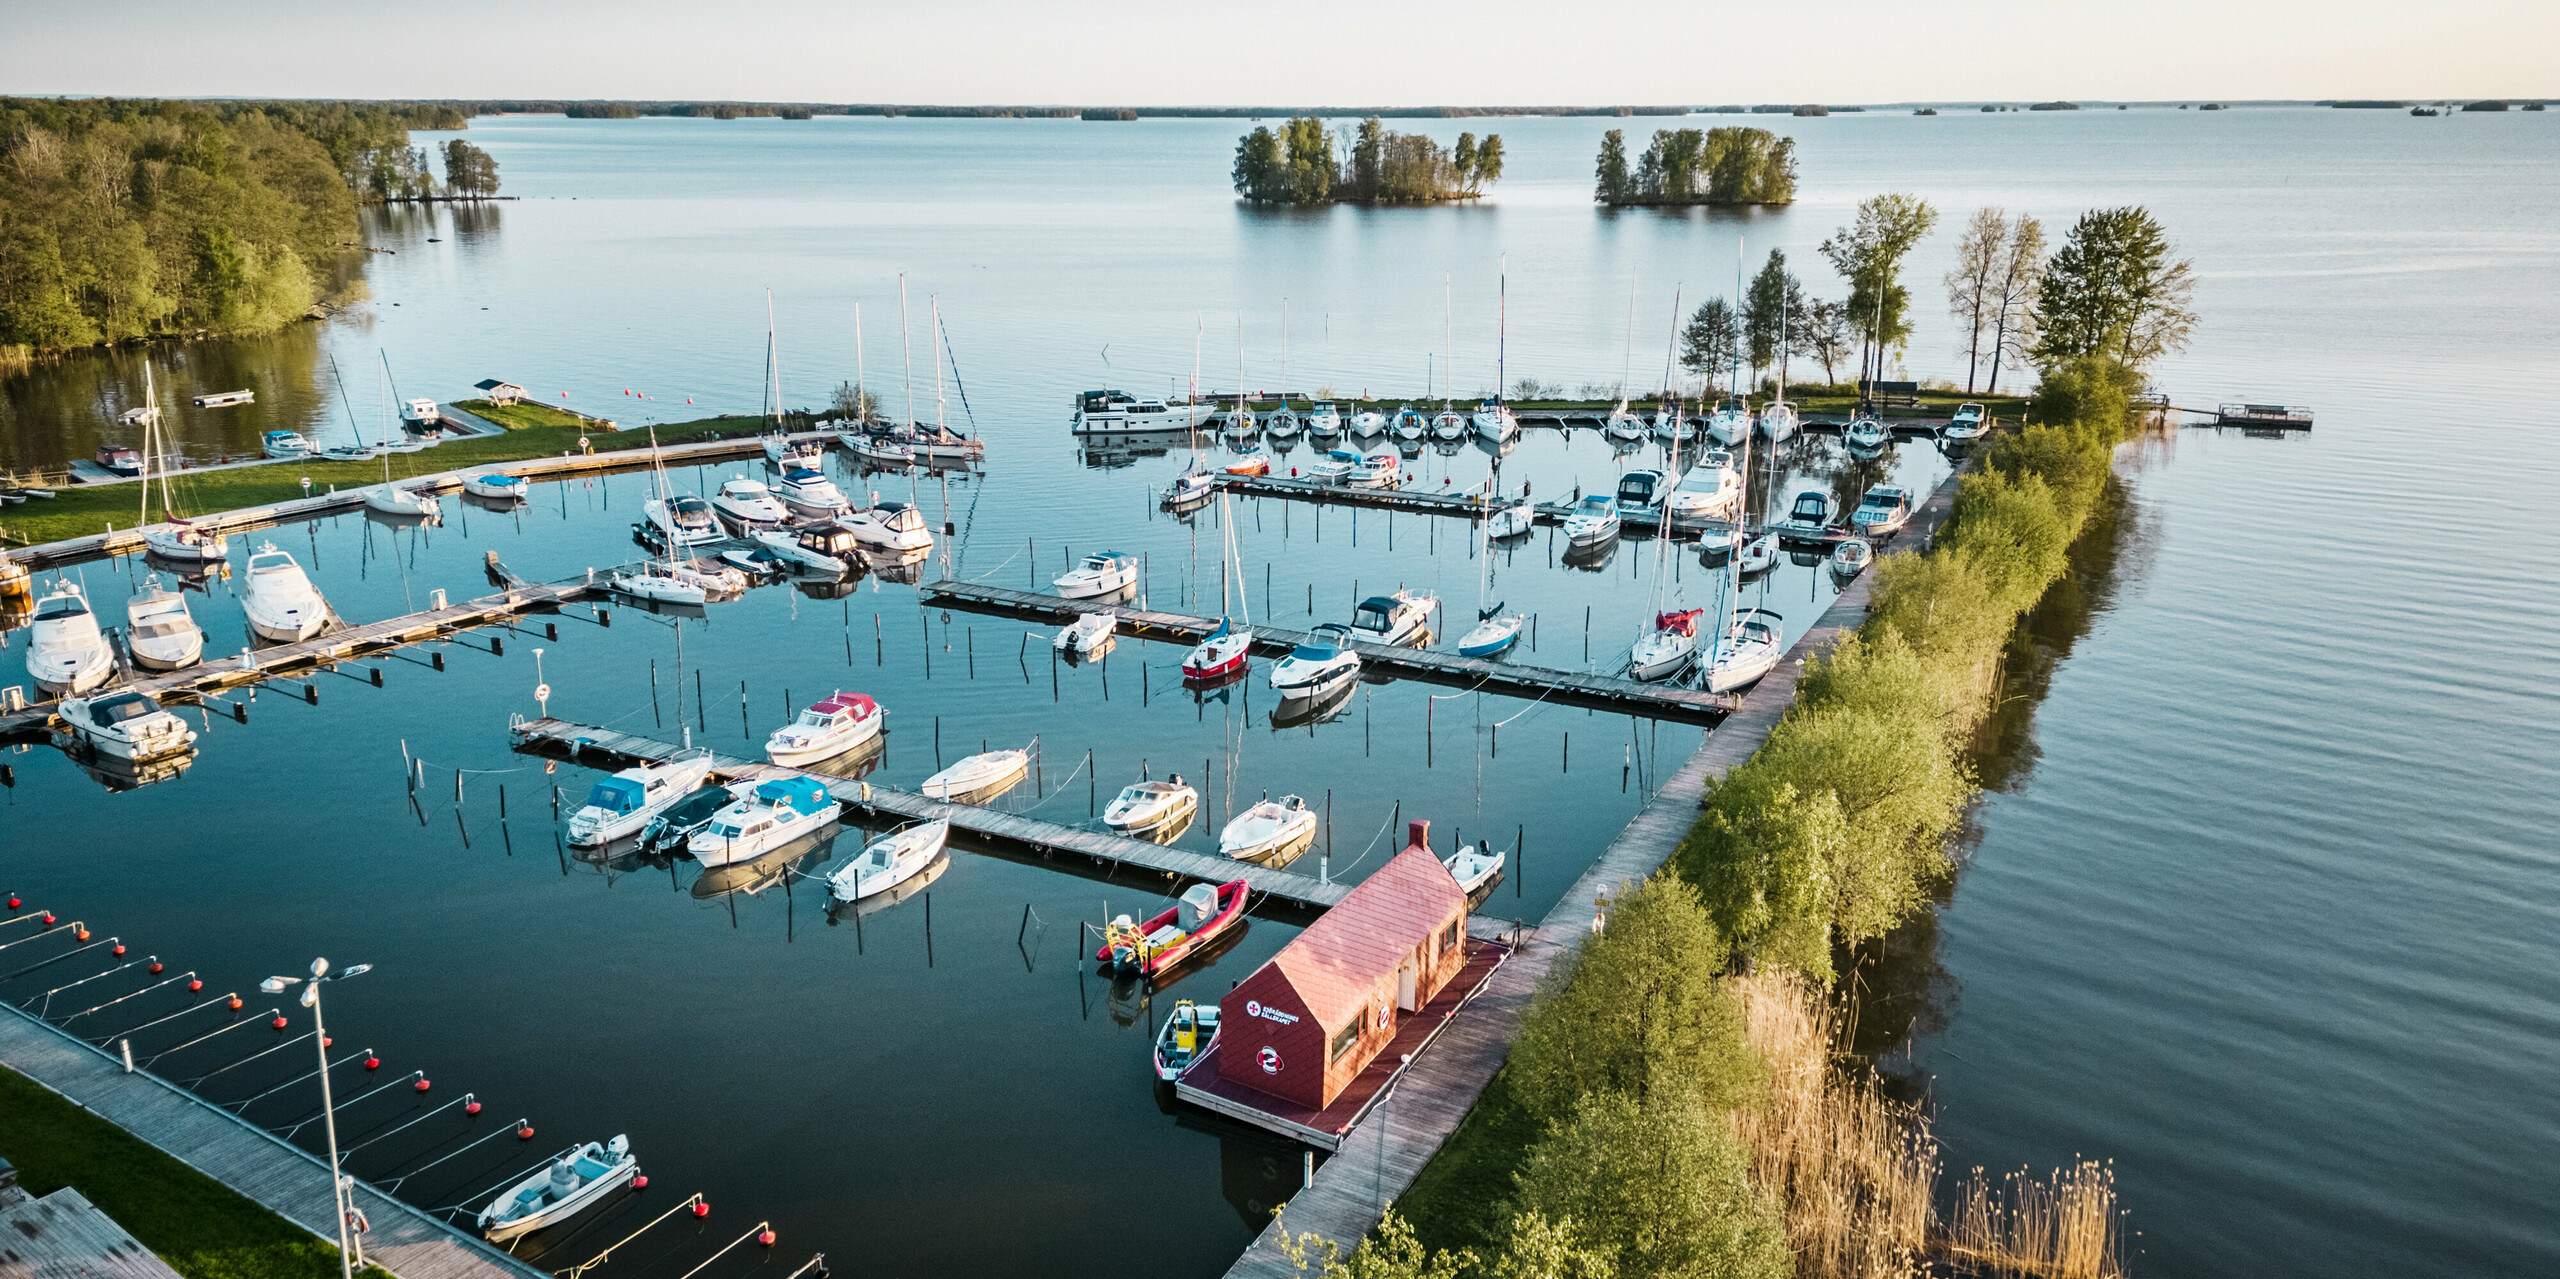 Letecký pohled na námořní záchranný dům v přístavu na jezeře Hjälmaren ve Švédsku, uhnízděný mezi plachetnicemi a klidnou modrou vodou. Poutavá tmavě červená střecha a fasáda domu z falcovaných a fasádních šablon PREFA 29×29 harmonicky zapadají do mořského prostředí a zároveň vytvářejí silný vizuální akcent. Záchranná stanice slouží jako životně důležitá základna pro vodní záchranáře a je svědectvím o propojení člověka s přírodou a nutnosti chránit obojí.